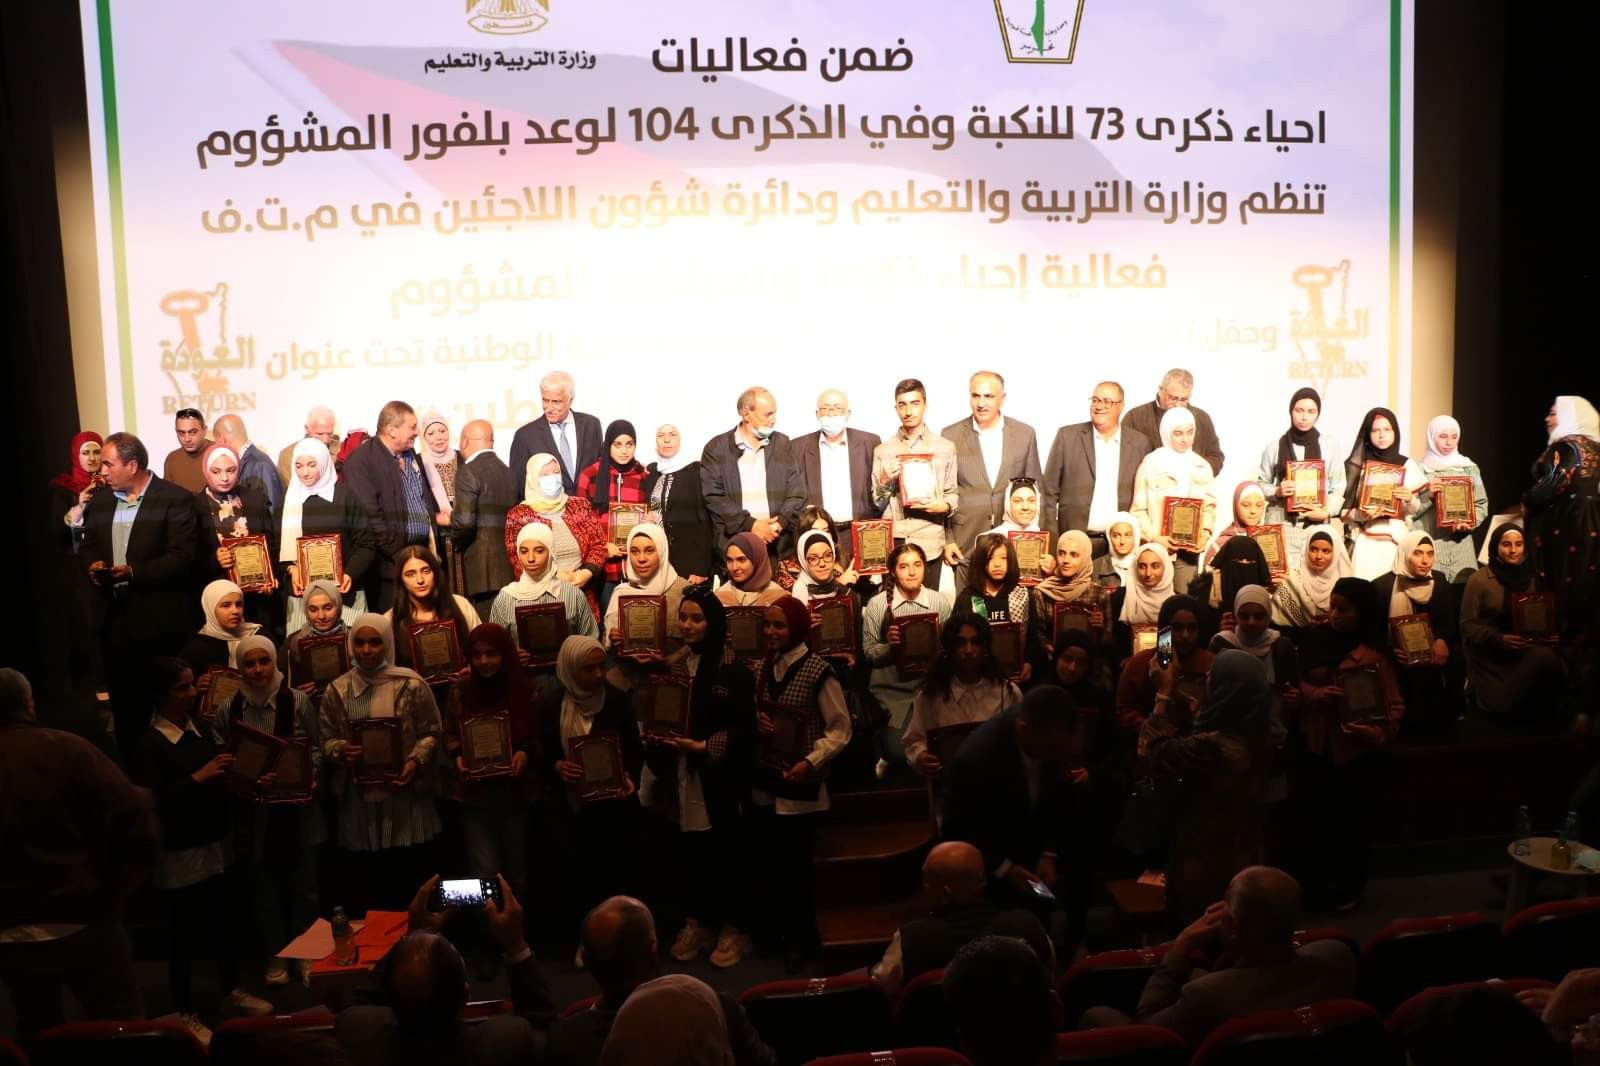 حفل نظمته اليوم دائرة شؤون اللاجئين بالتعاون مع وزارة التربية والتعليم لتكريم الفائزين في المسابقة الأدبية لطلبة المدارس في فلسطين 3